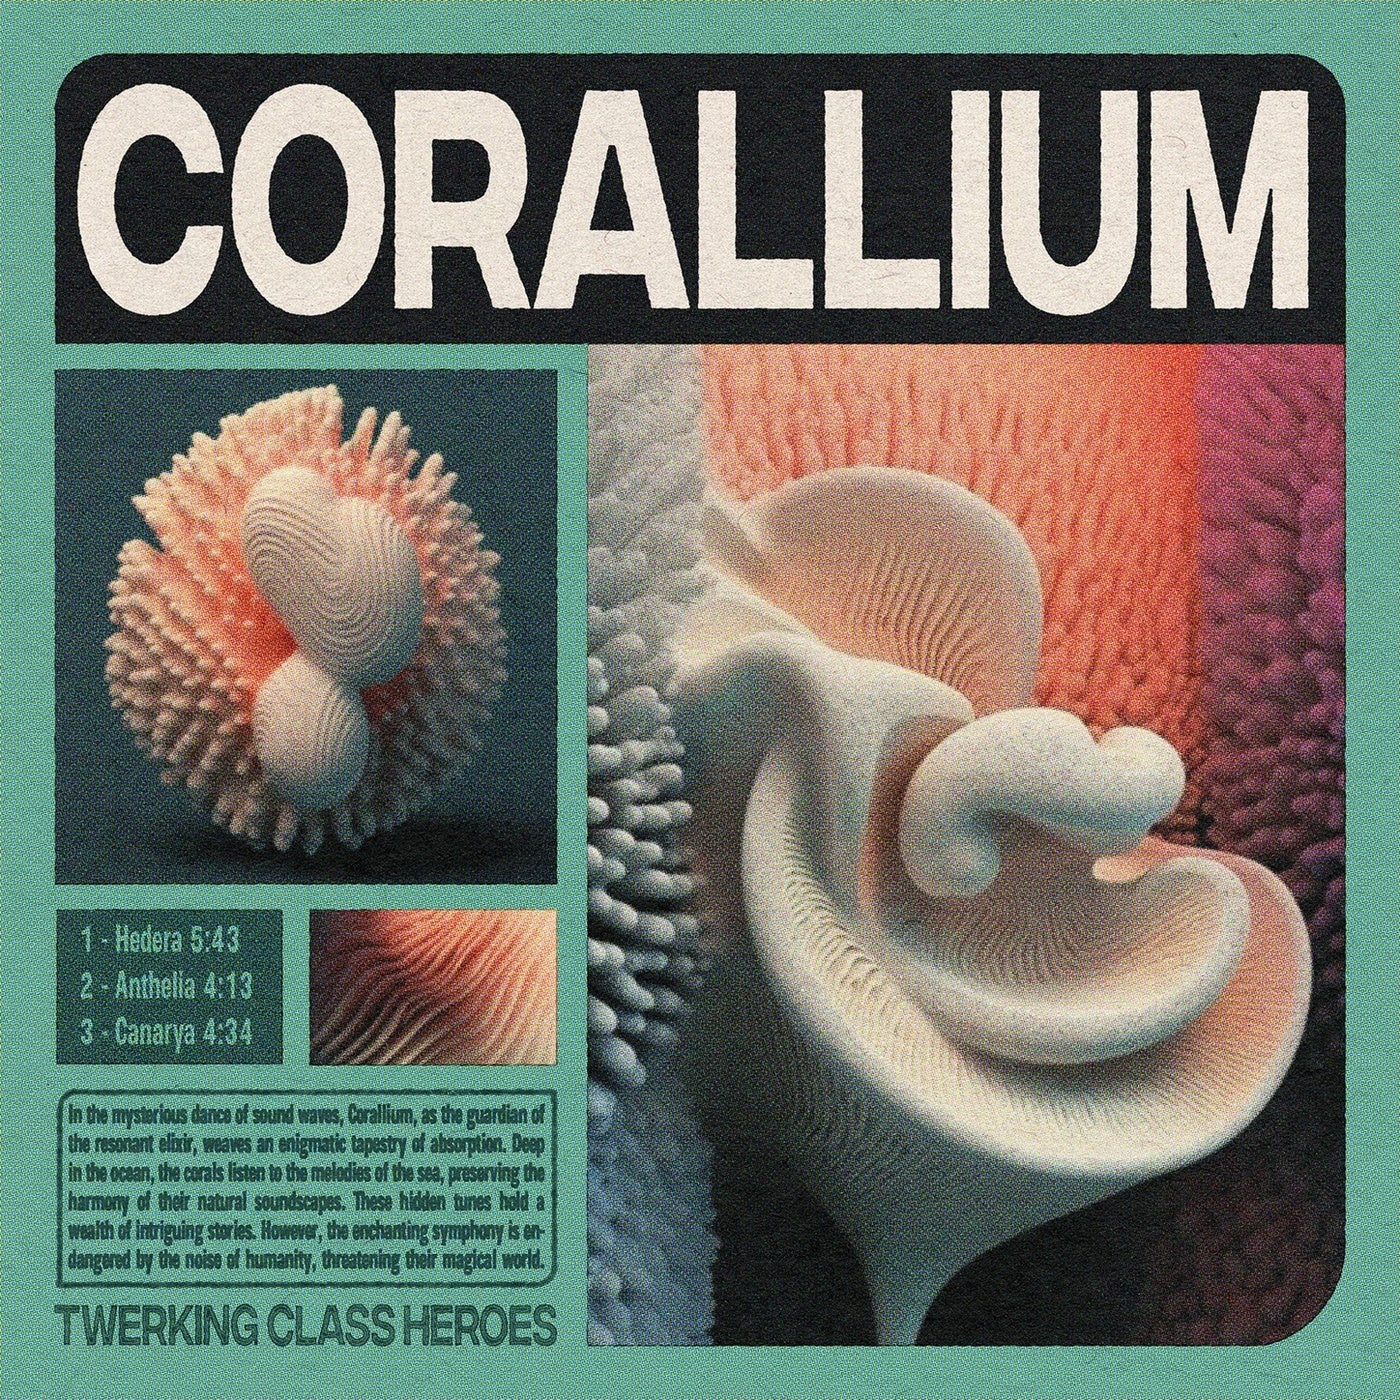 Corallium